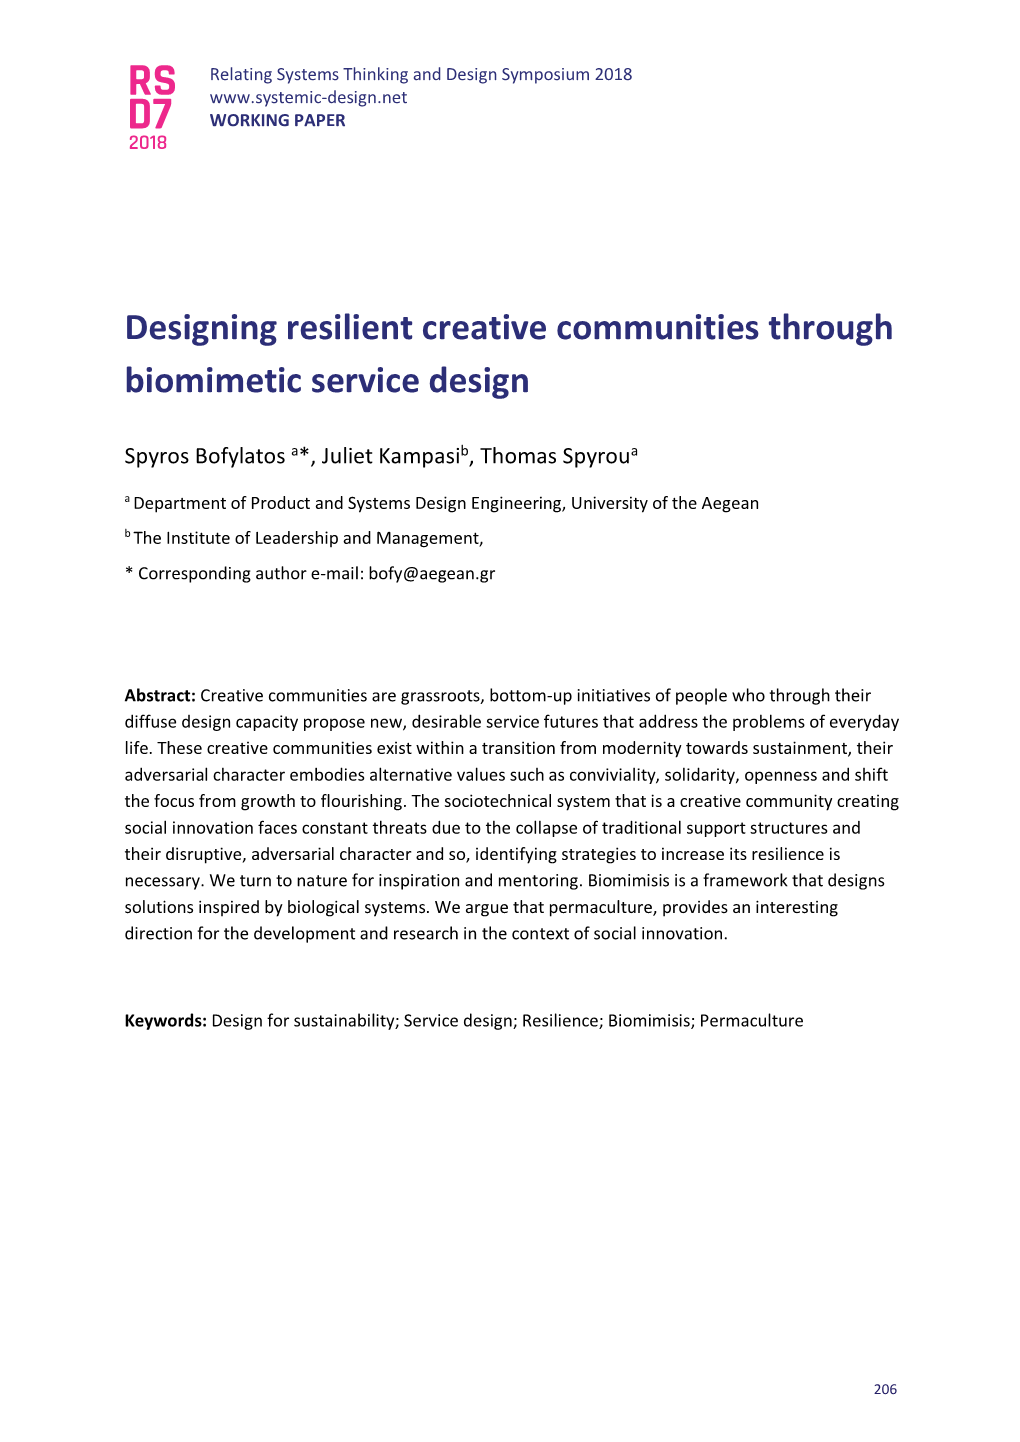 Designing Resilient Creative Communities Through Biomimetic Service Design